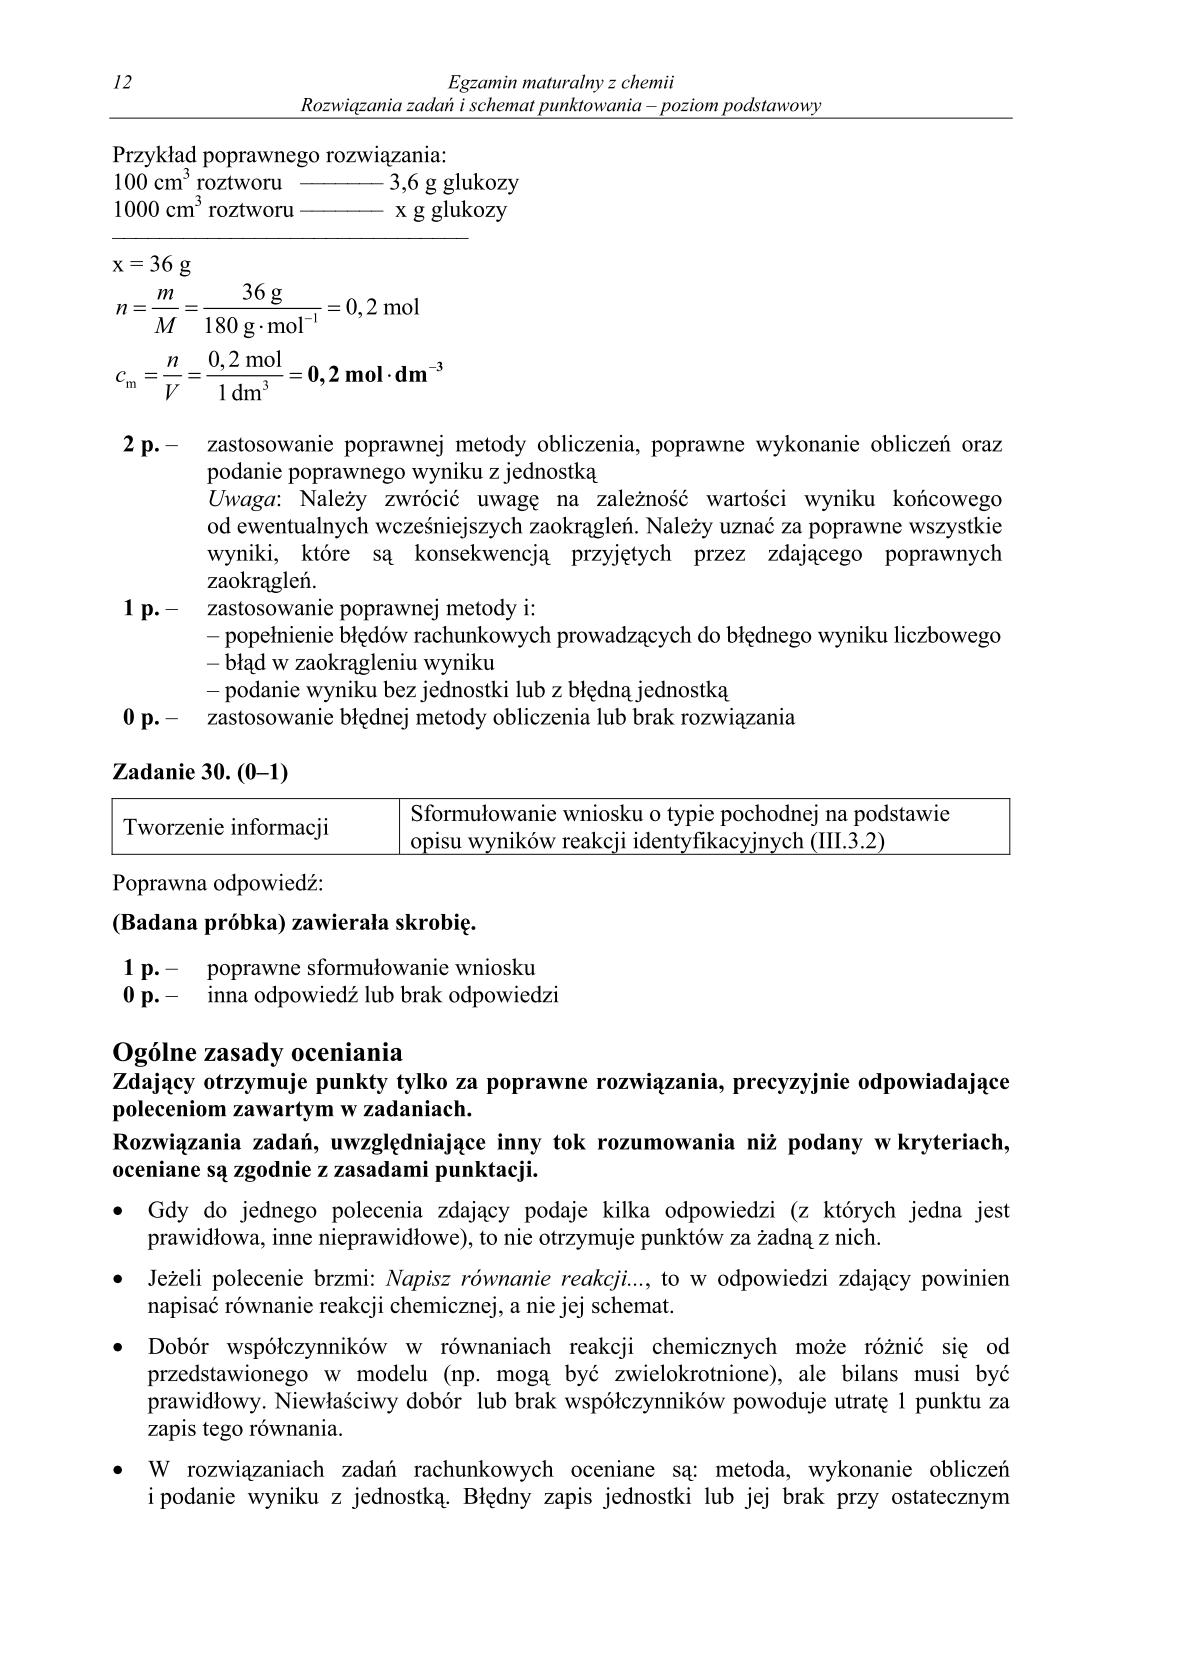 odpowiedzi-chemia-poziom-podstawowy-matura-2014-str.12